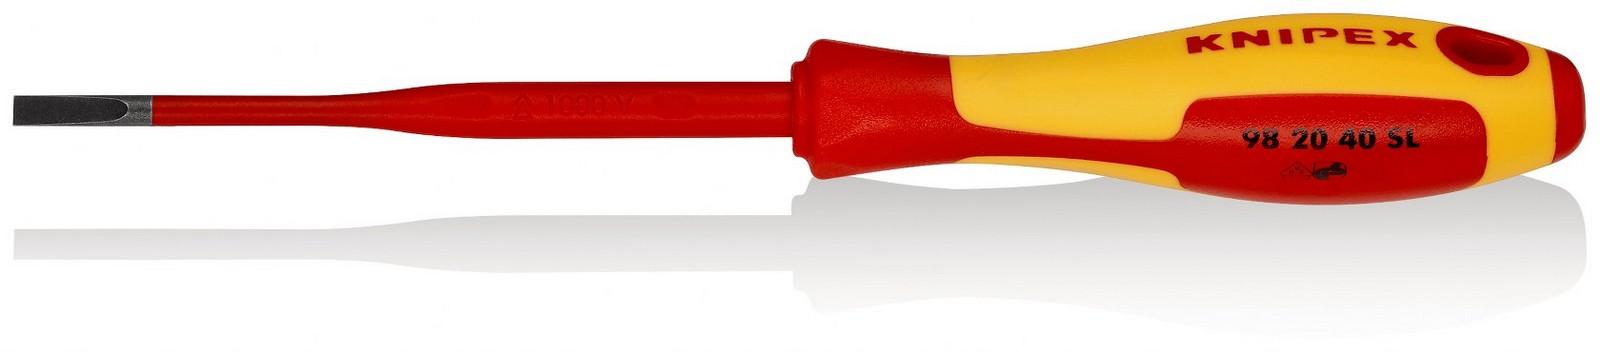 KNIPEX Odvijač Slim ravni 1000V VDE 4mm 98 20 40 SL crveno-žuti